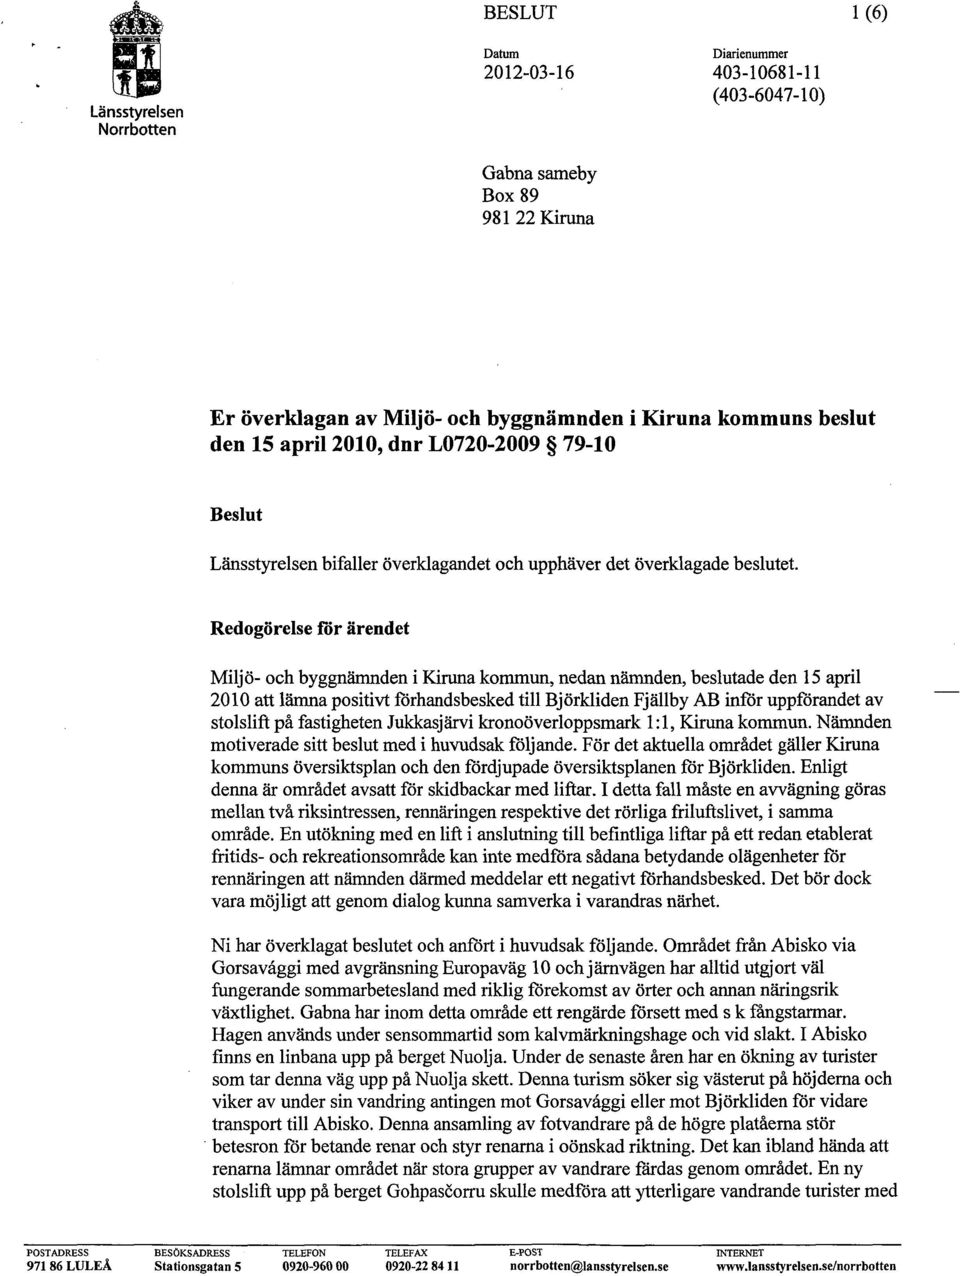 Redogörelse för ärendet Miljö- och byggnämnden i Kiruna kommun, nedan nämnden, beslutade den 15 april 2010 att lämna positivt förhandsbesked till Björkliden Fjällby AB inför uppförandet av stolslift